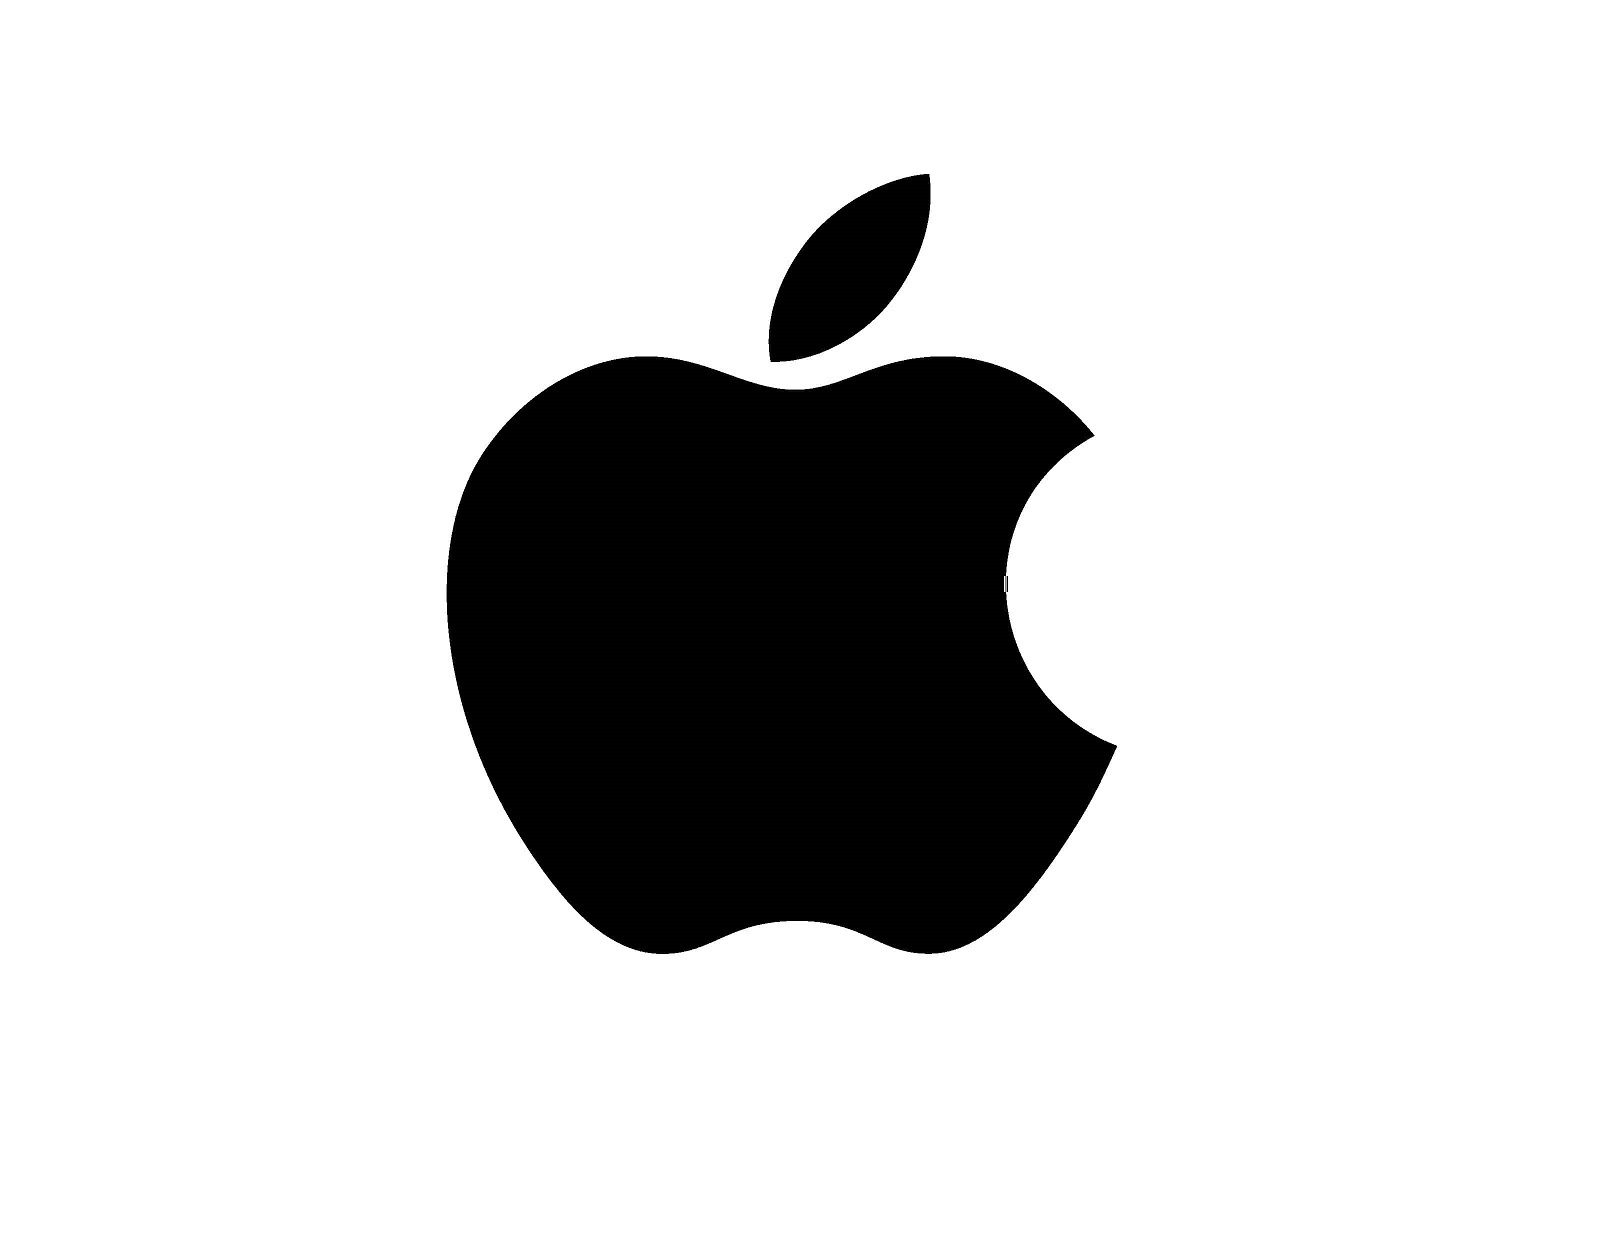 Apple เจรจากับซัพพลายเออร์ไทย 3 ราย เกี่ยวกับการผลิต Macbook นอกจีน